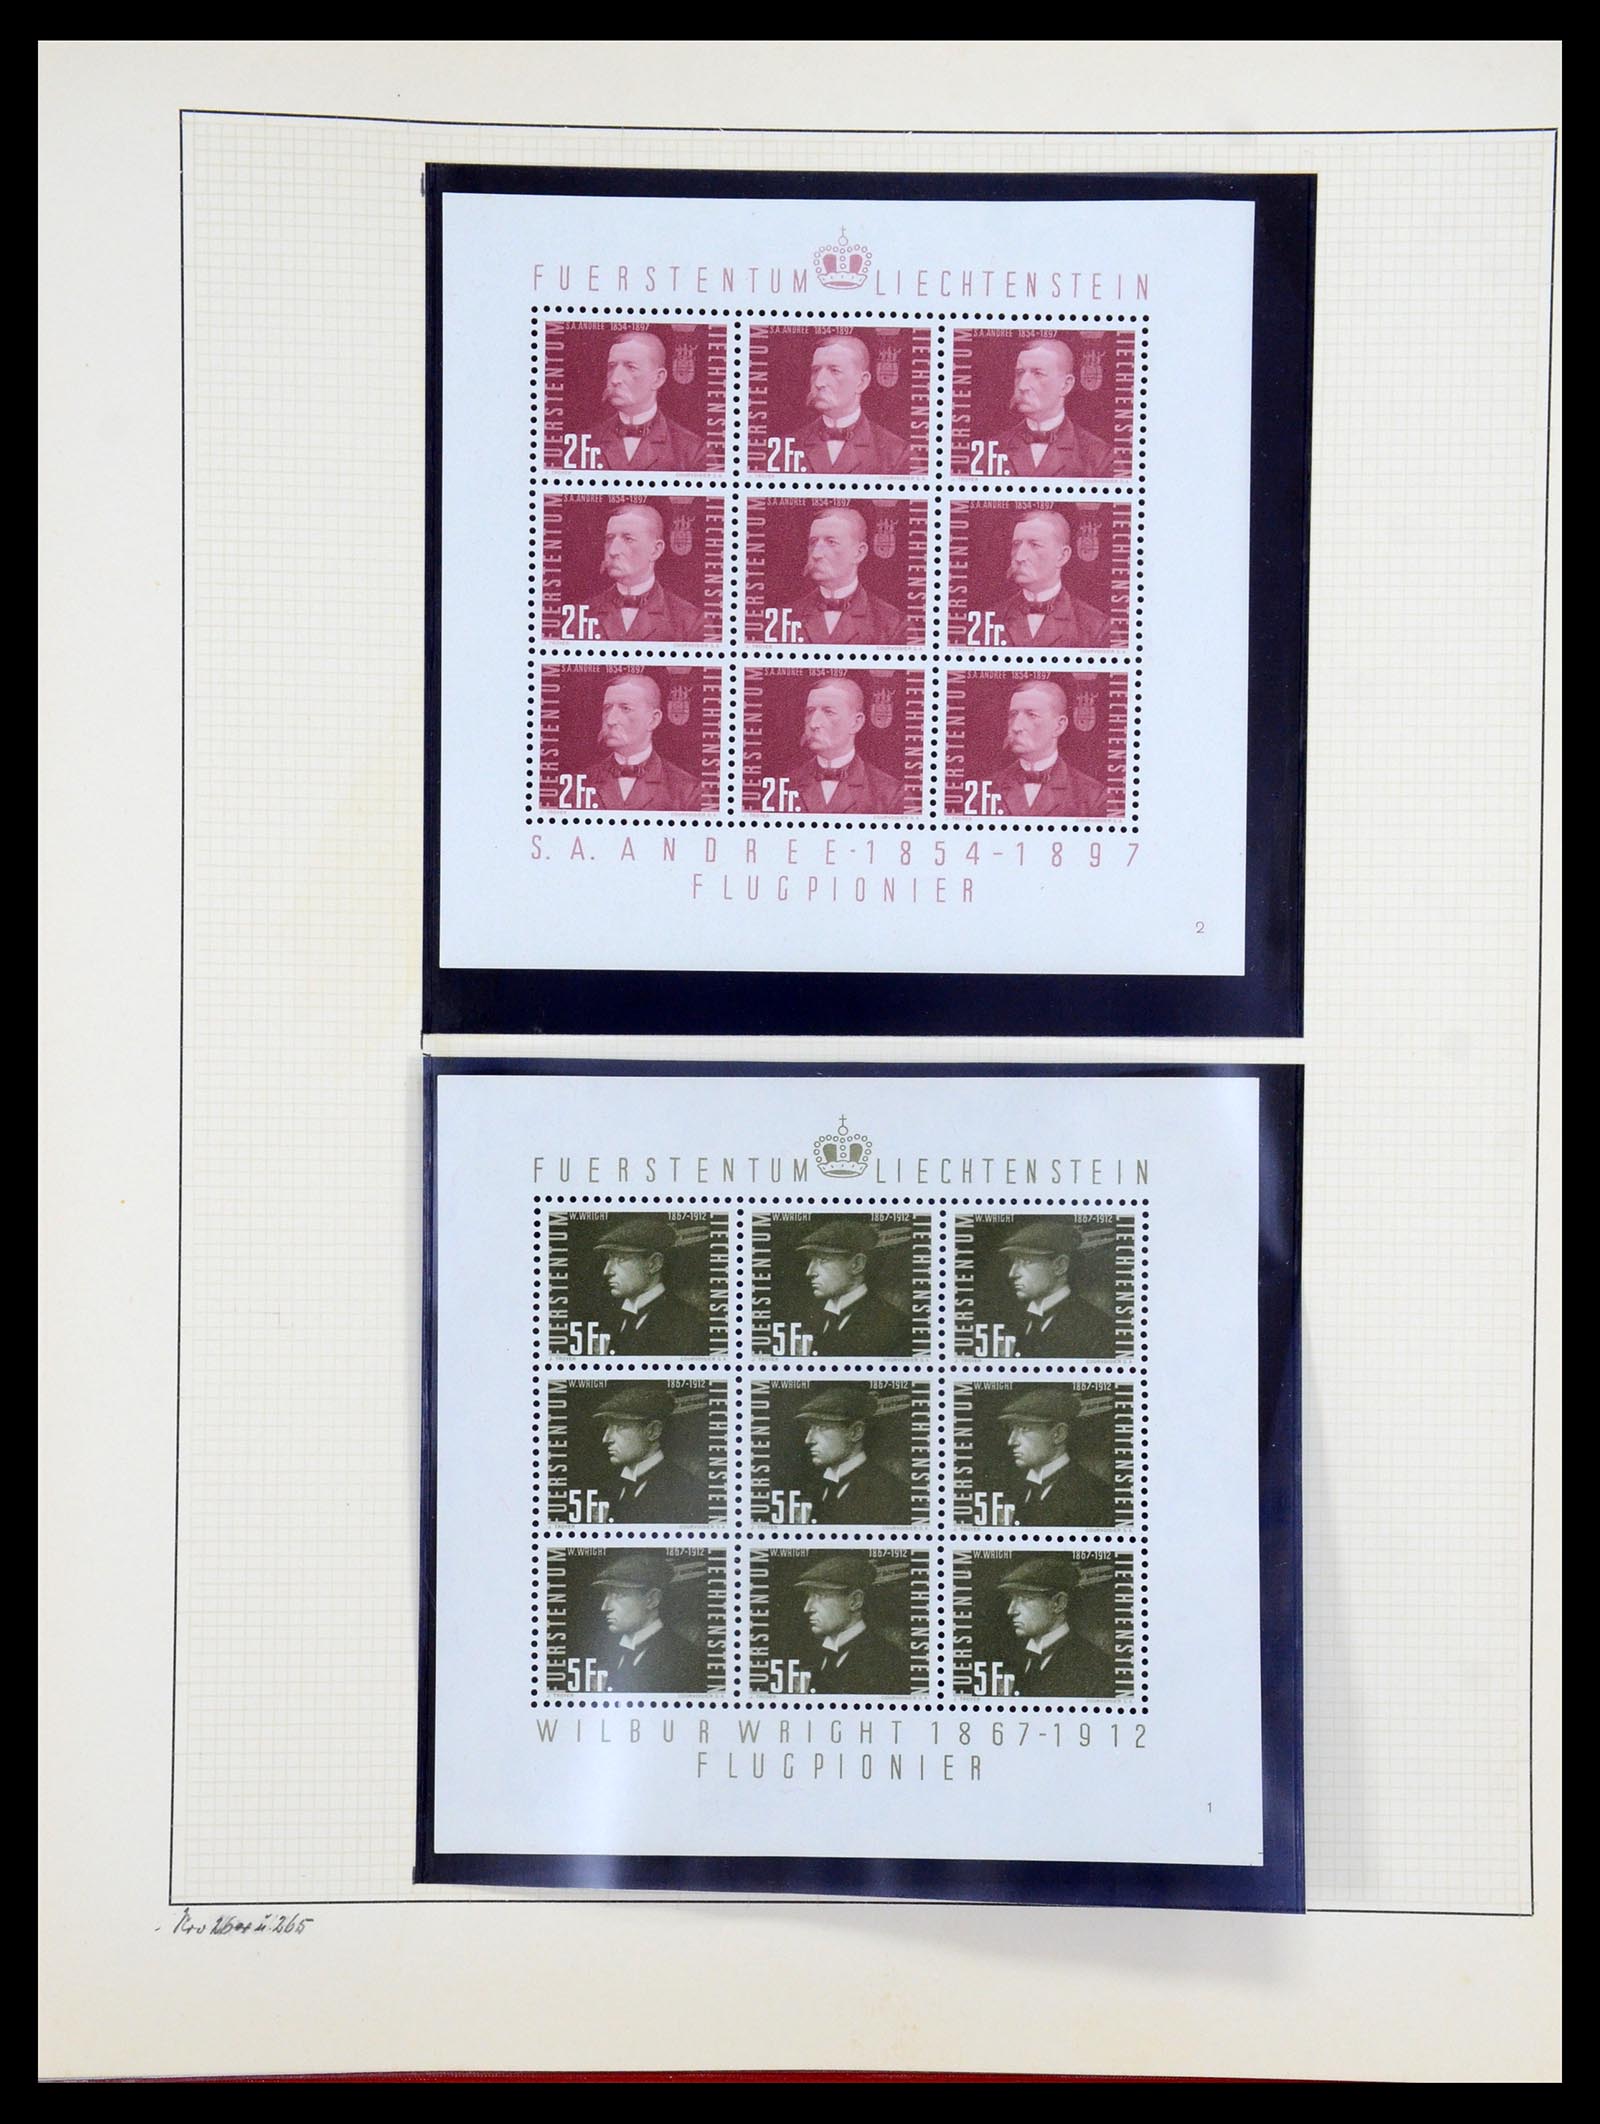 36280 059 - Stamp collection 36280 Liechtenstein souvenir sheets and sheetlets 1934-